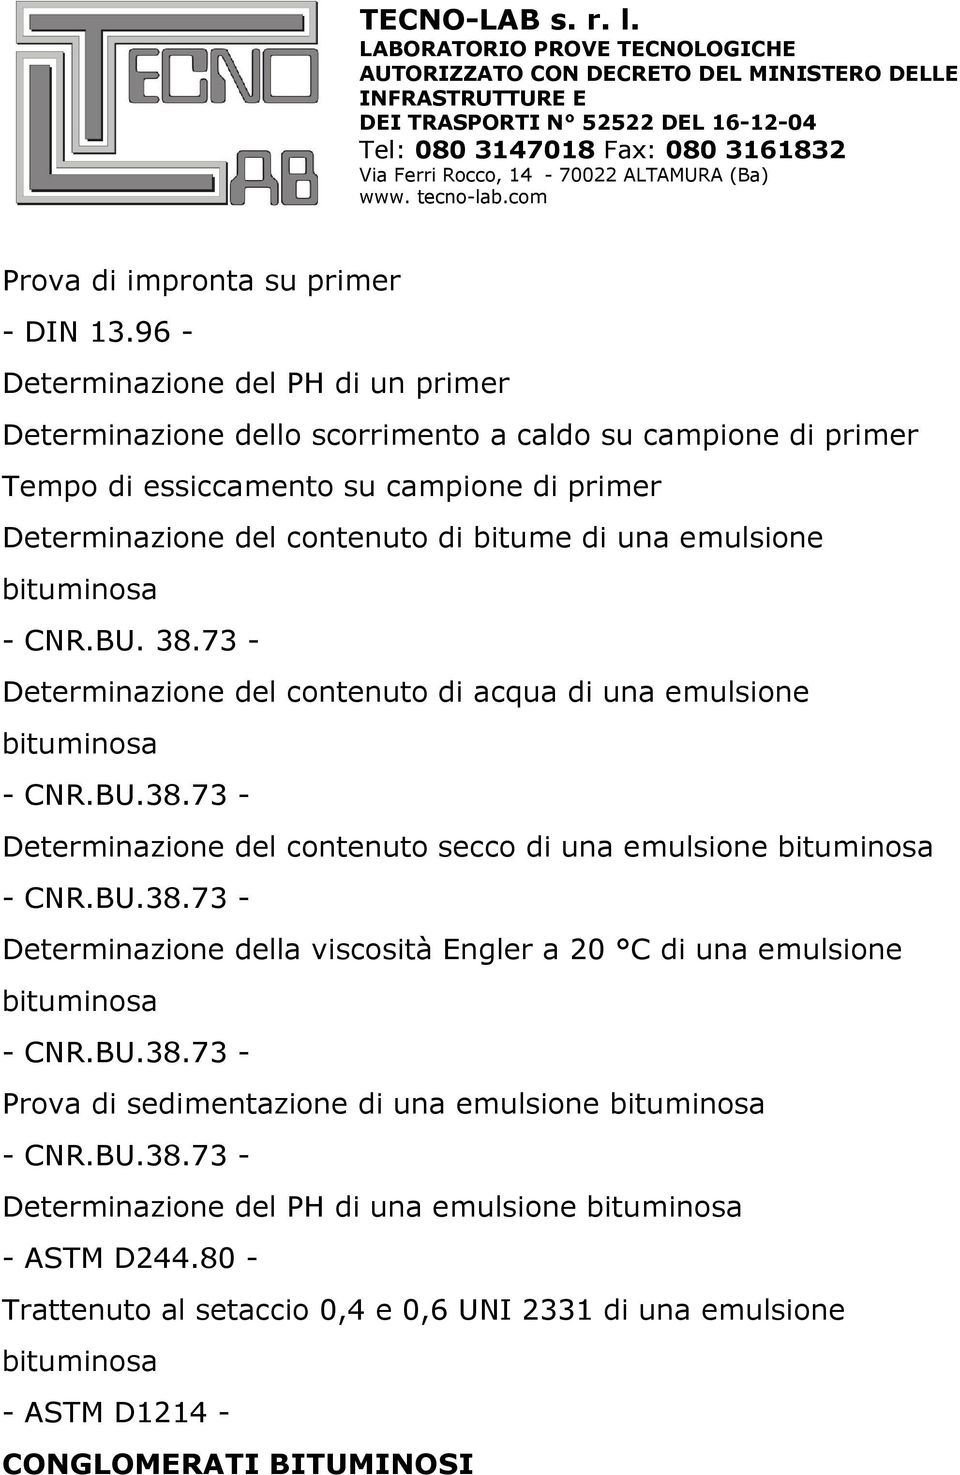 una emulsione bituminosa - CNR.BU. 38.73 - Determinazione del contenuto di acqua di una emulsione bituminosa - CNR.BU.38.73 - Determinazione del contenuto secco di una emulsione bituminosa - CNR.